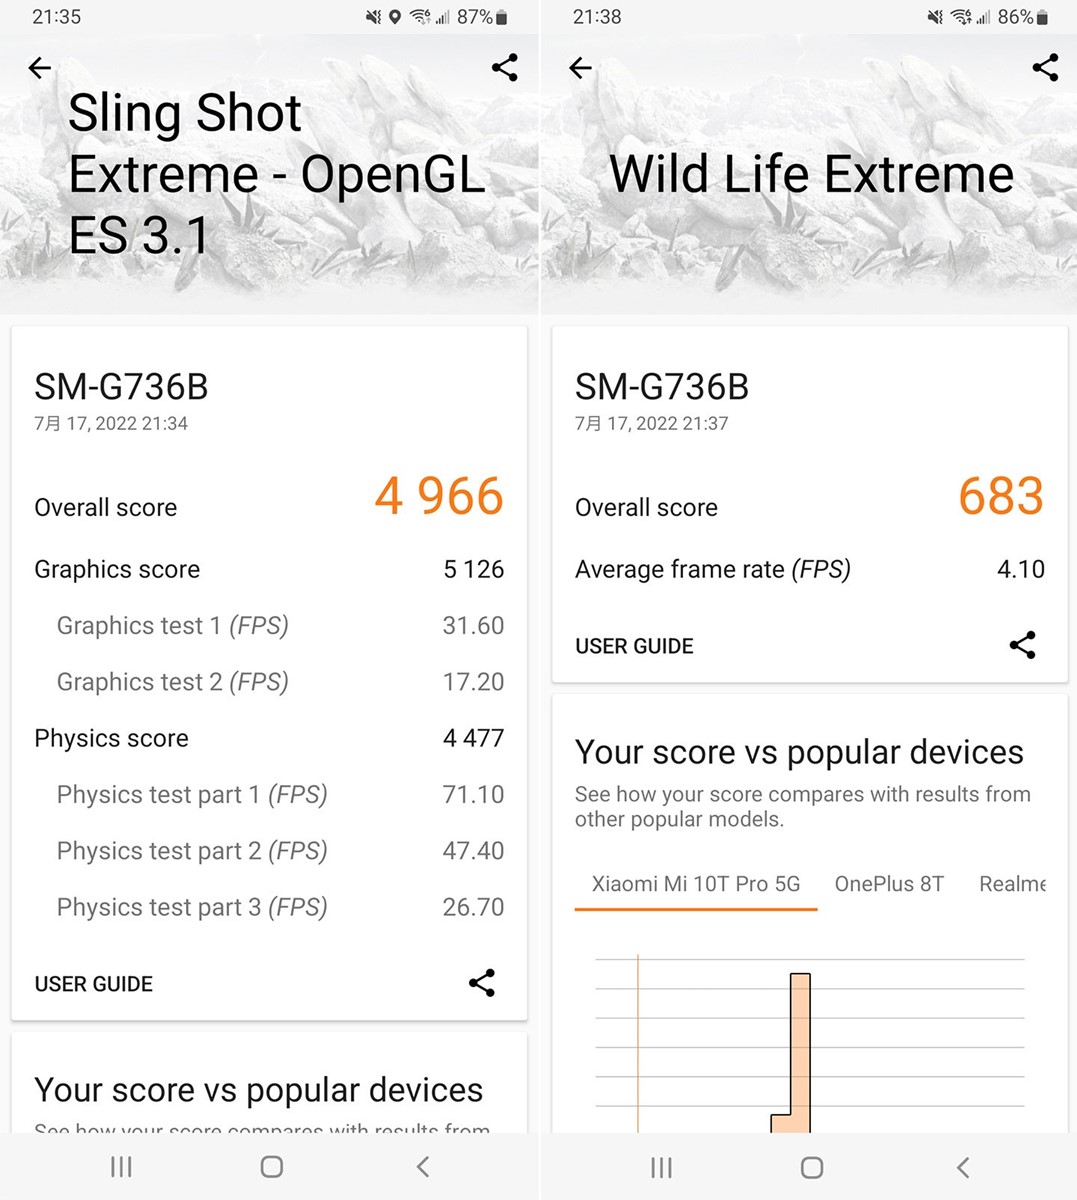 透過 3DMARK 評量 Galaxy XCover6 Pro 的 3D 效能，在 Sling Shot Extreme 模式獲得 4,966 分，Wild Life Extreme 模式獲得 683 分。